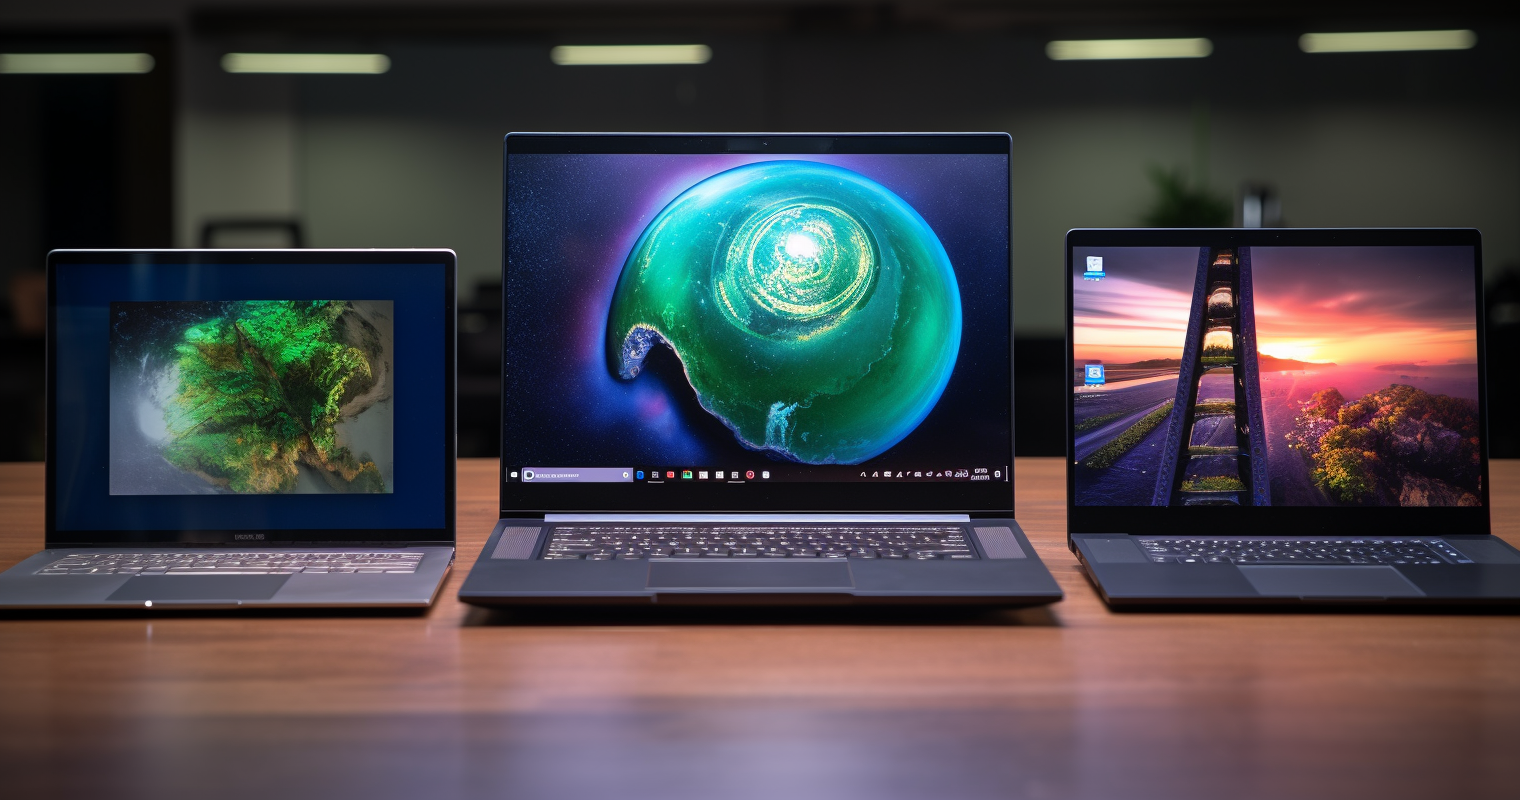 Laptop Comparison - Top 3 Laptops